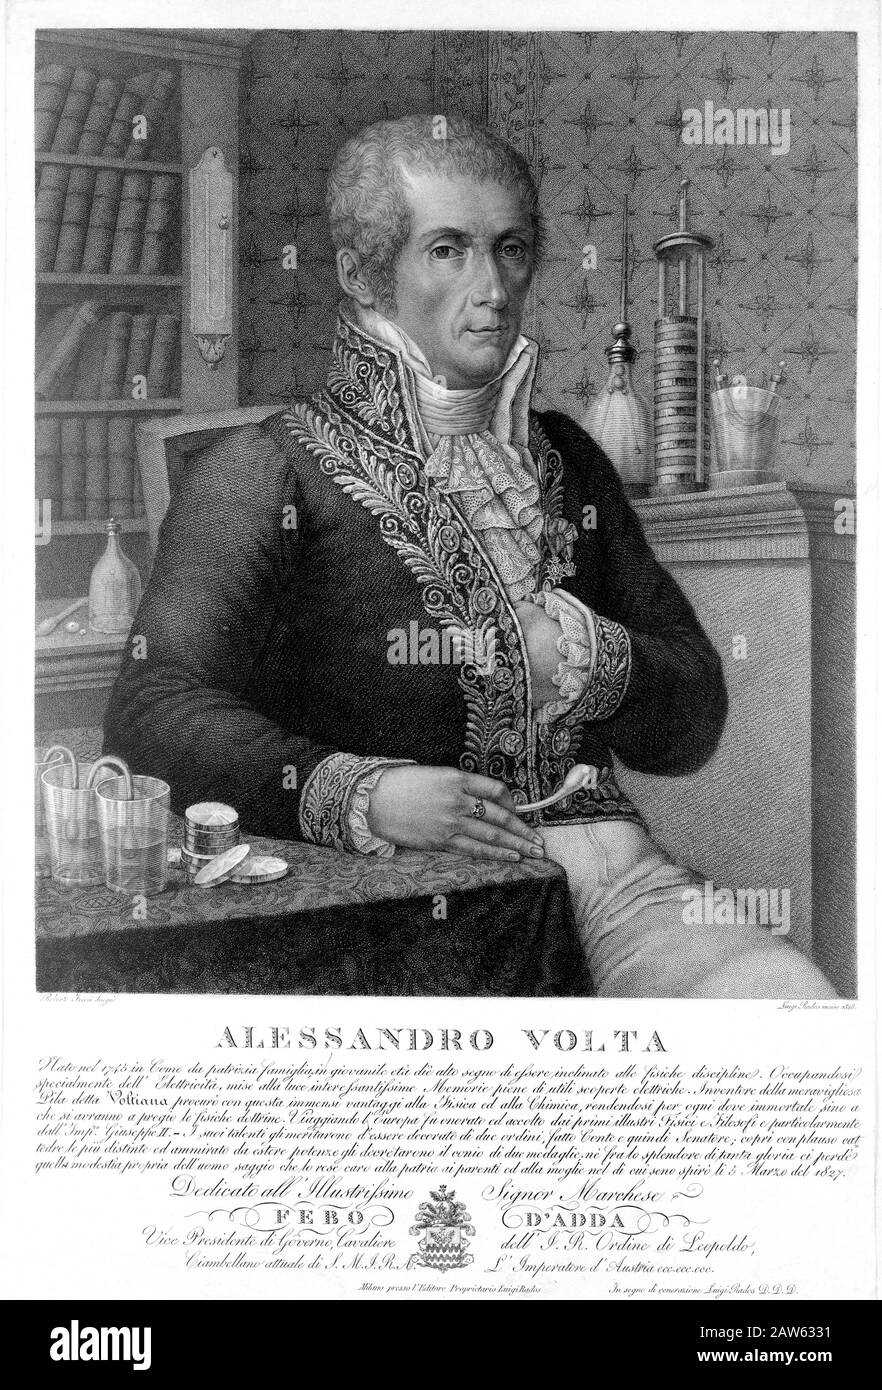 : Der italienische Physiker Graf ALESSANDRO VOLTA (* 1745 in Mailand, ITALIEN; † 187 in Rom), das von Luigi Rados eingravierte Porträt, das ursprünglich von Maler stammt Stockfoto